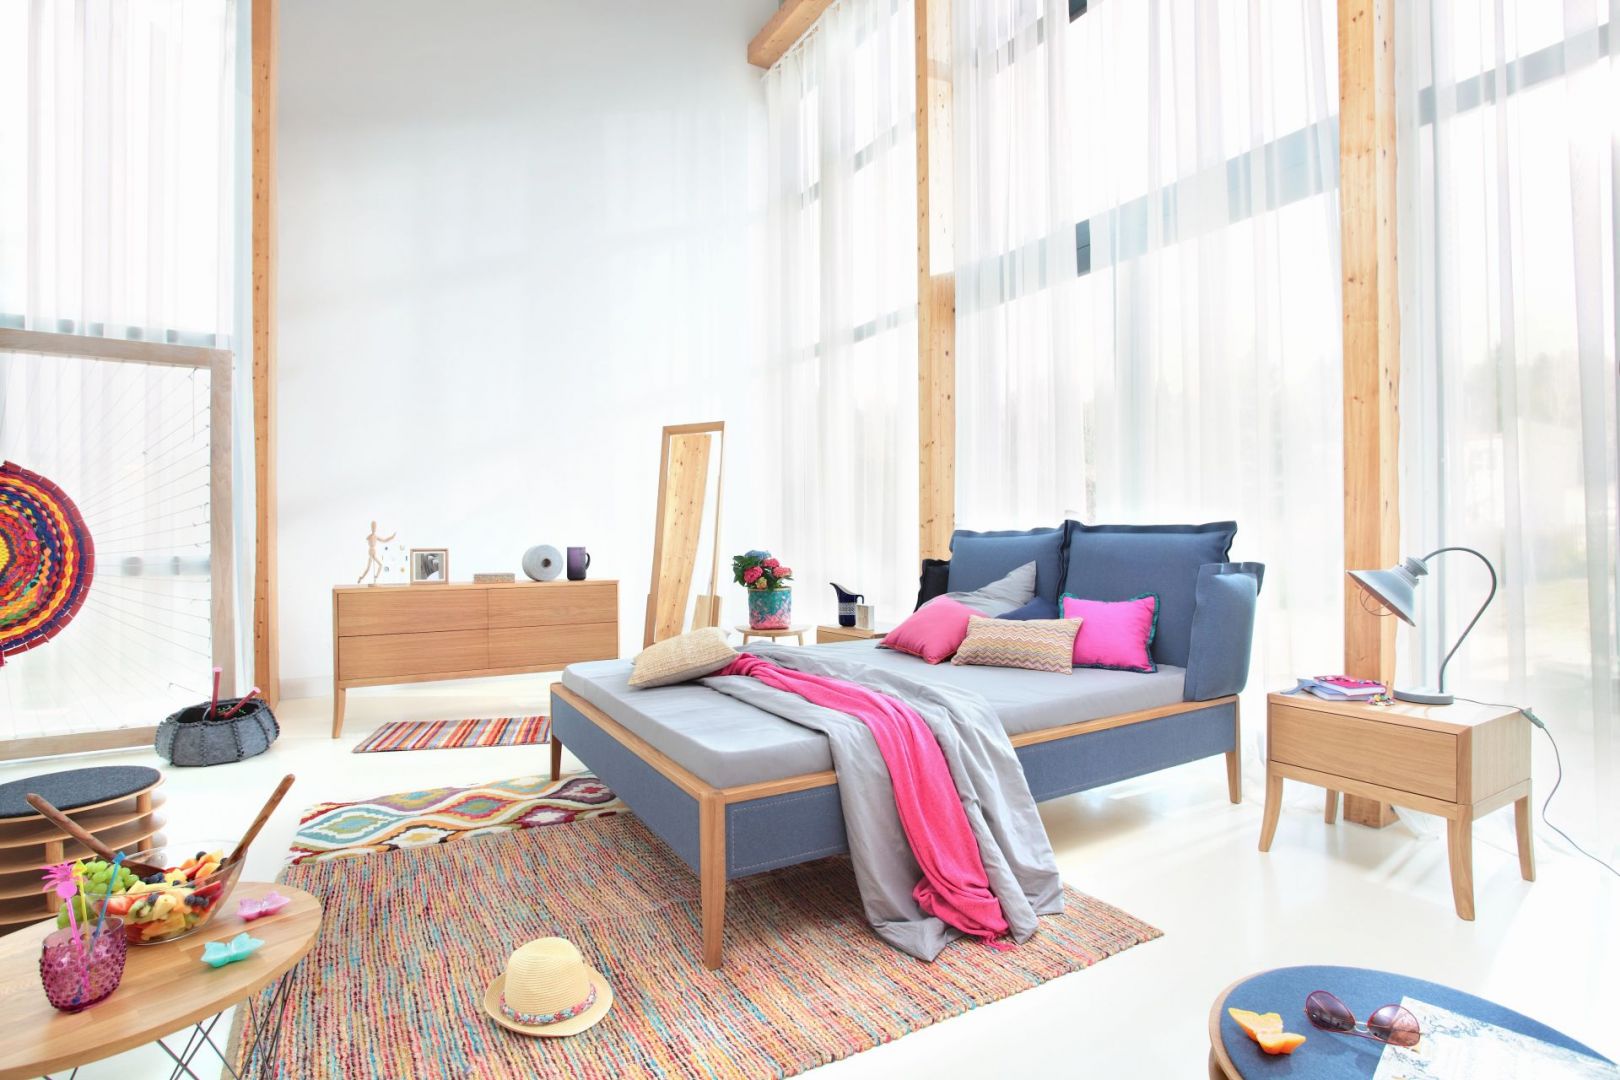 Łóżko Skey Luxury oprócz nowoczesnej stylistyki, ma również ciekawe kolory tapicerki. Fot. Swarzędz Home